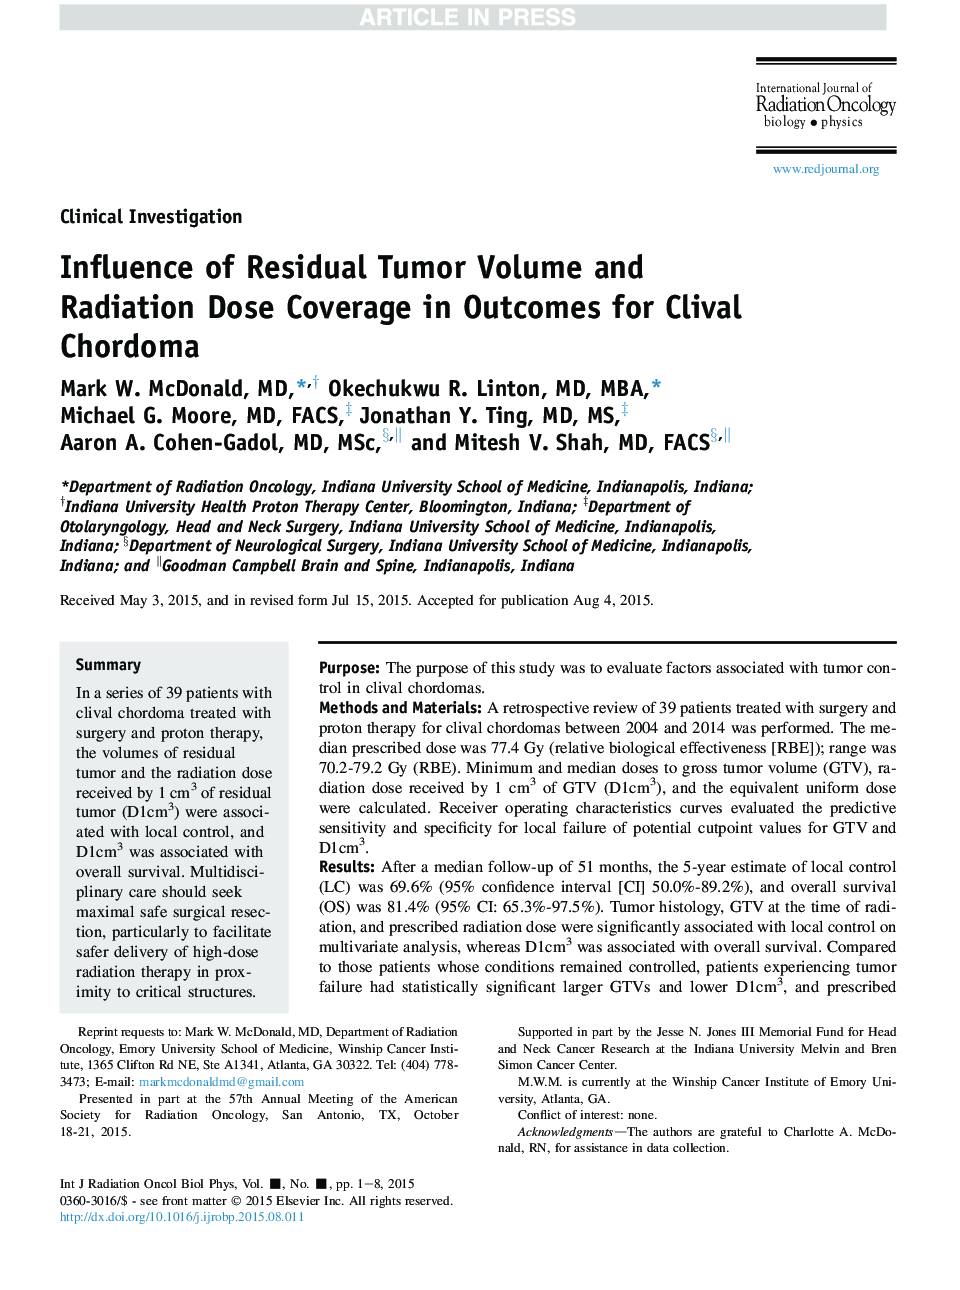 تأثیر حجم باقیمانده تومور و پوشش دوز تابش در نتایج کوردومای کلیدی 